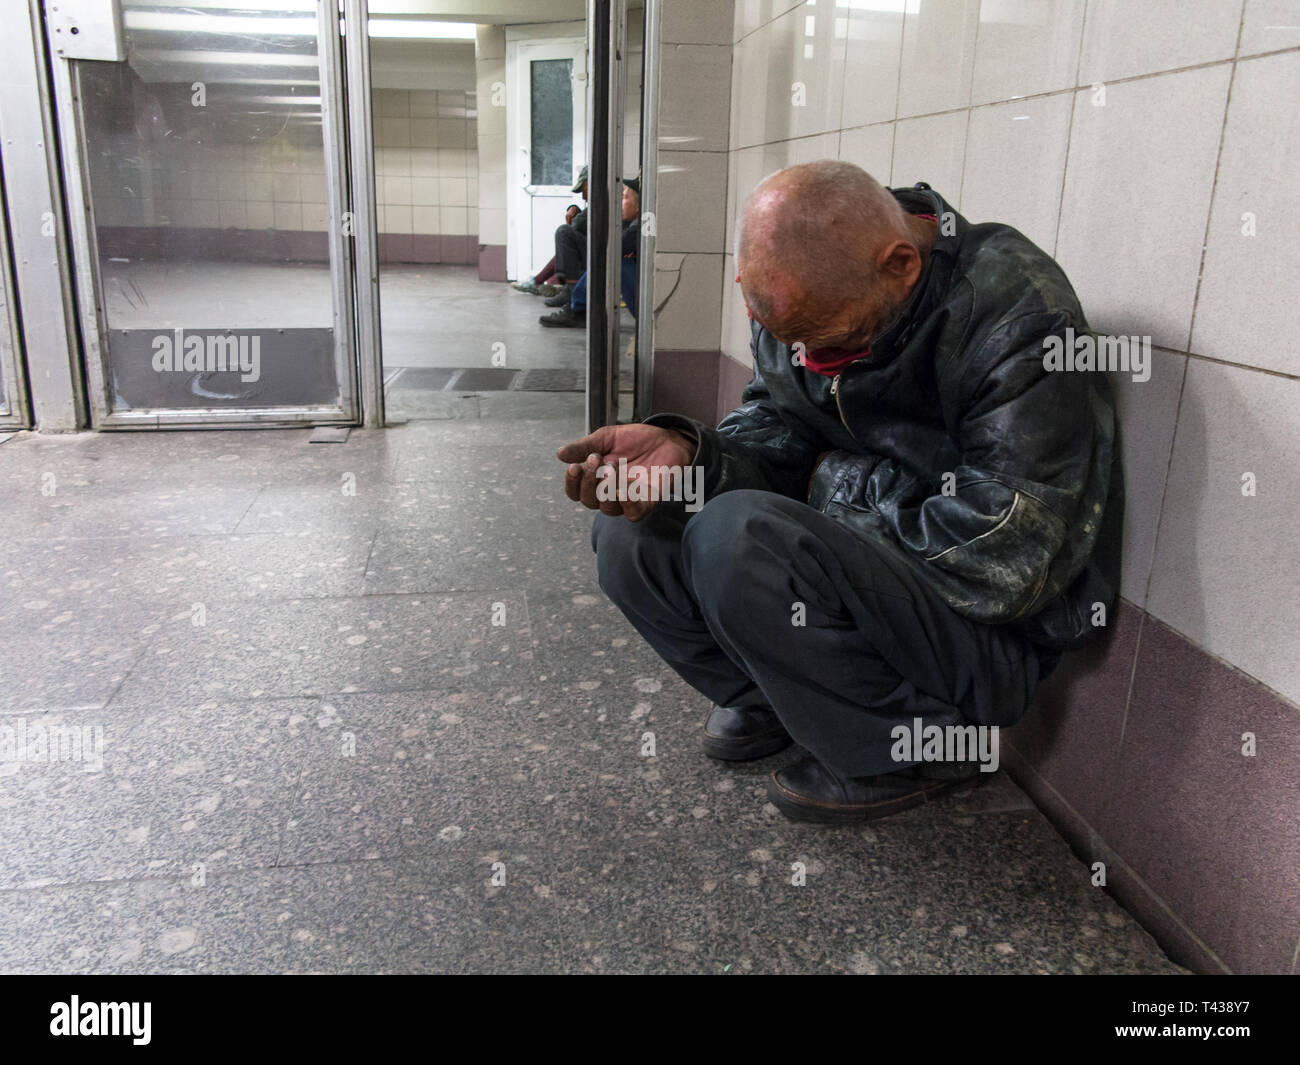 Moskau, Russland - 09/21/2015: Obdachlose Bettler zu den unterirdischen Gang sitzen an der U-Bahn Stockfoto